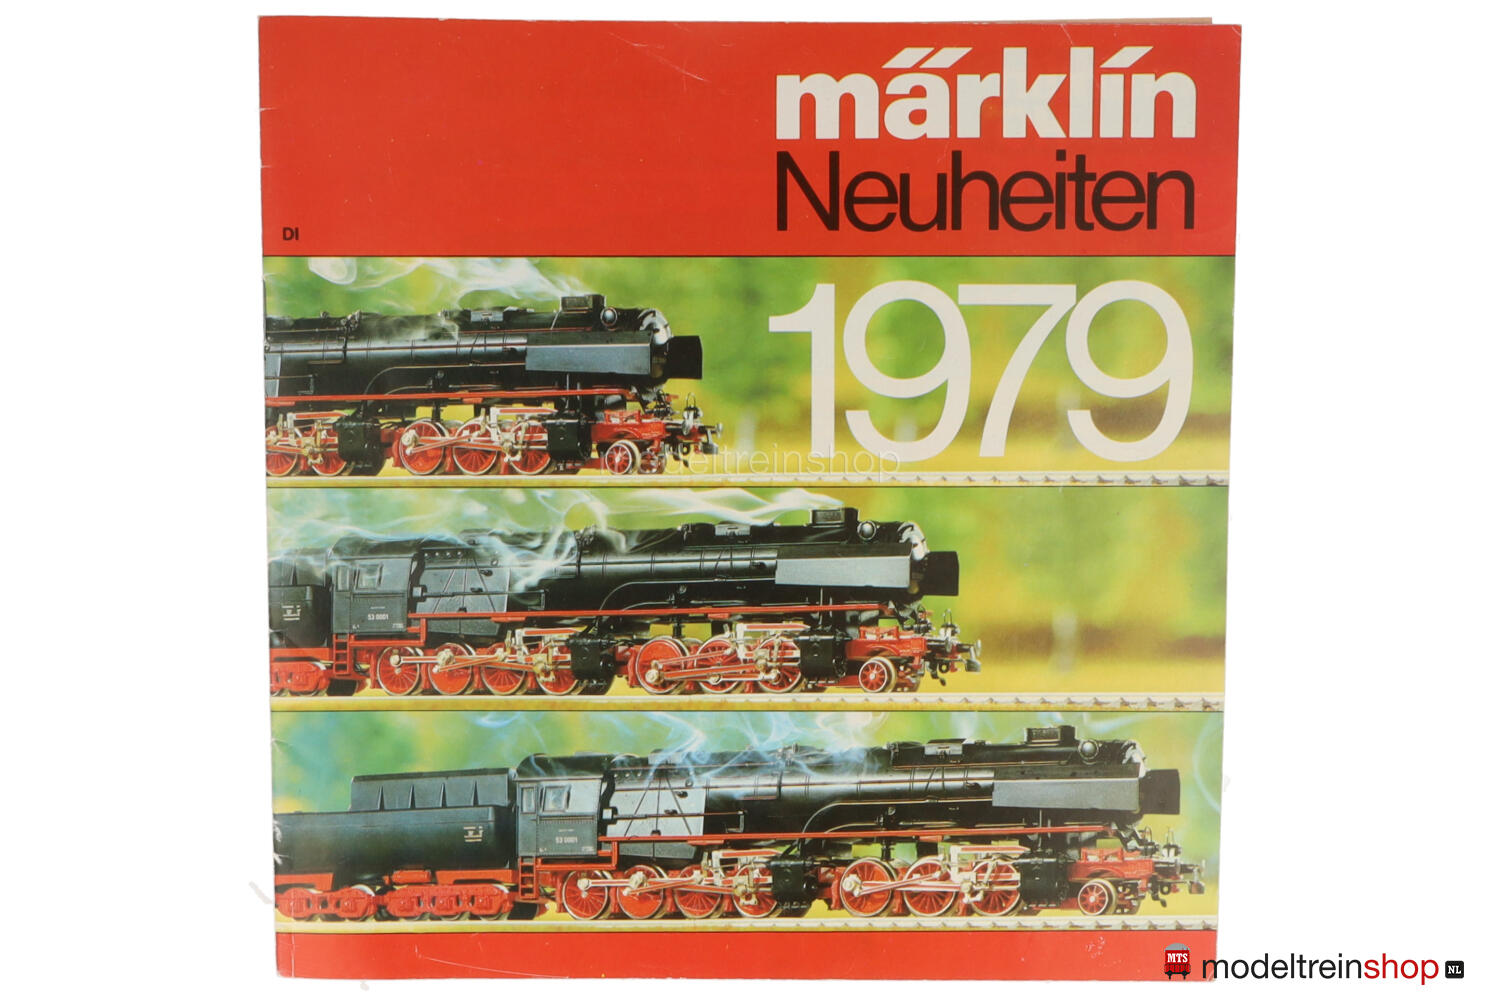 overschreden borduurwerk kip Marklin Catalogus 1979 - Duitse Uitgave met prijslijst - Modeltreinshop